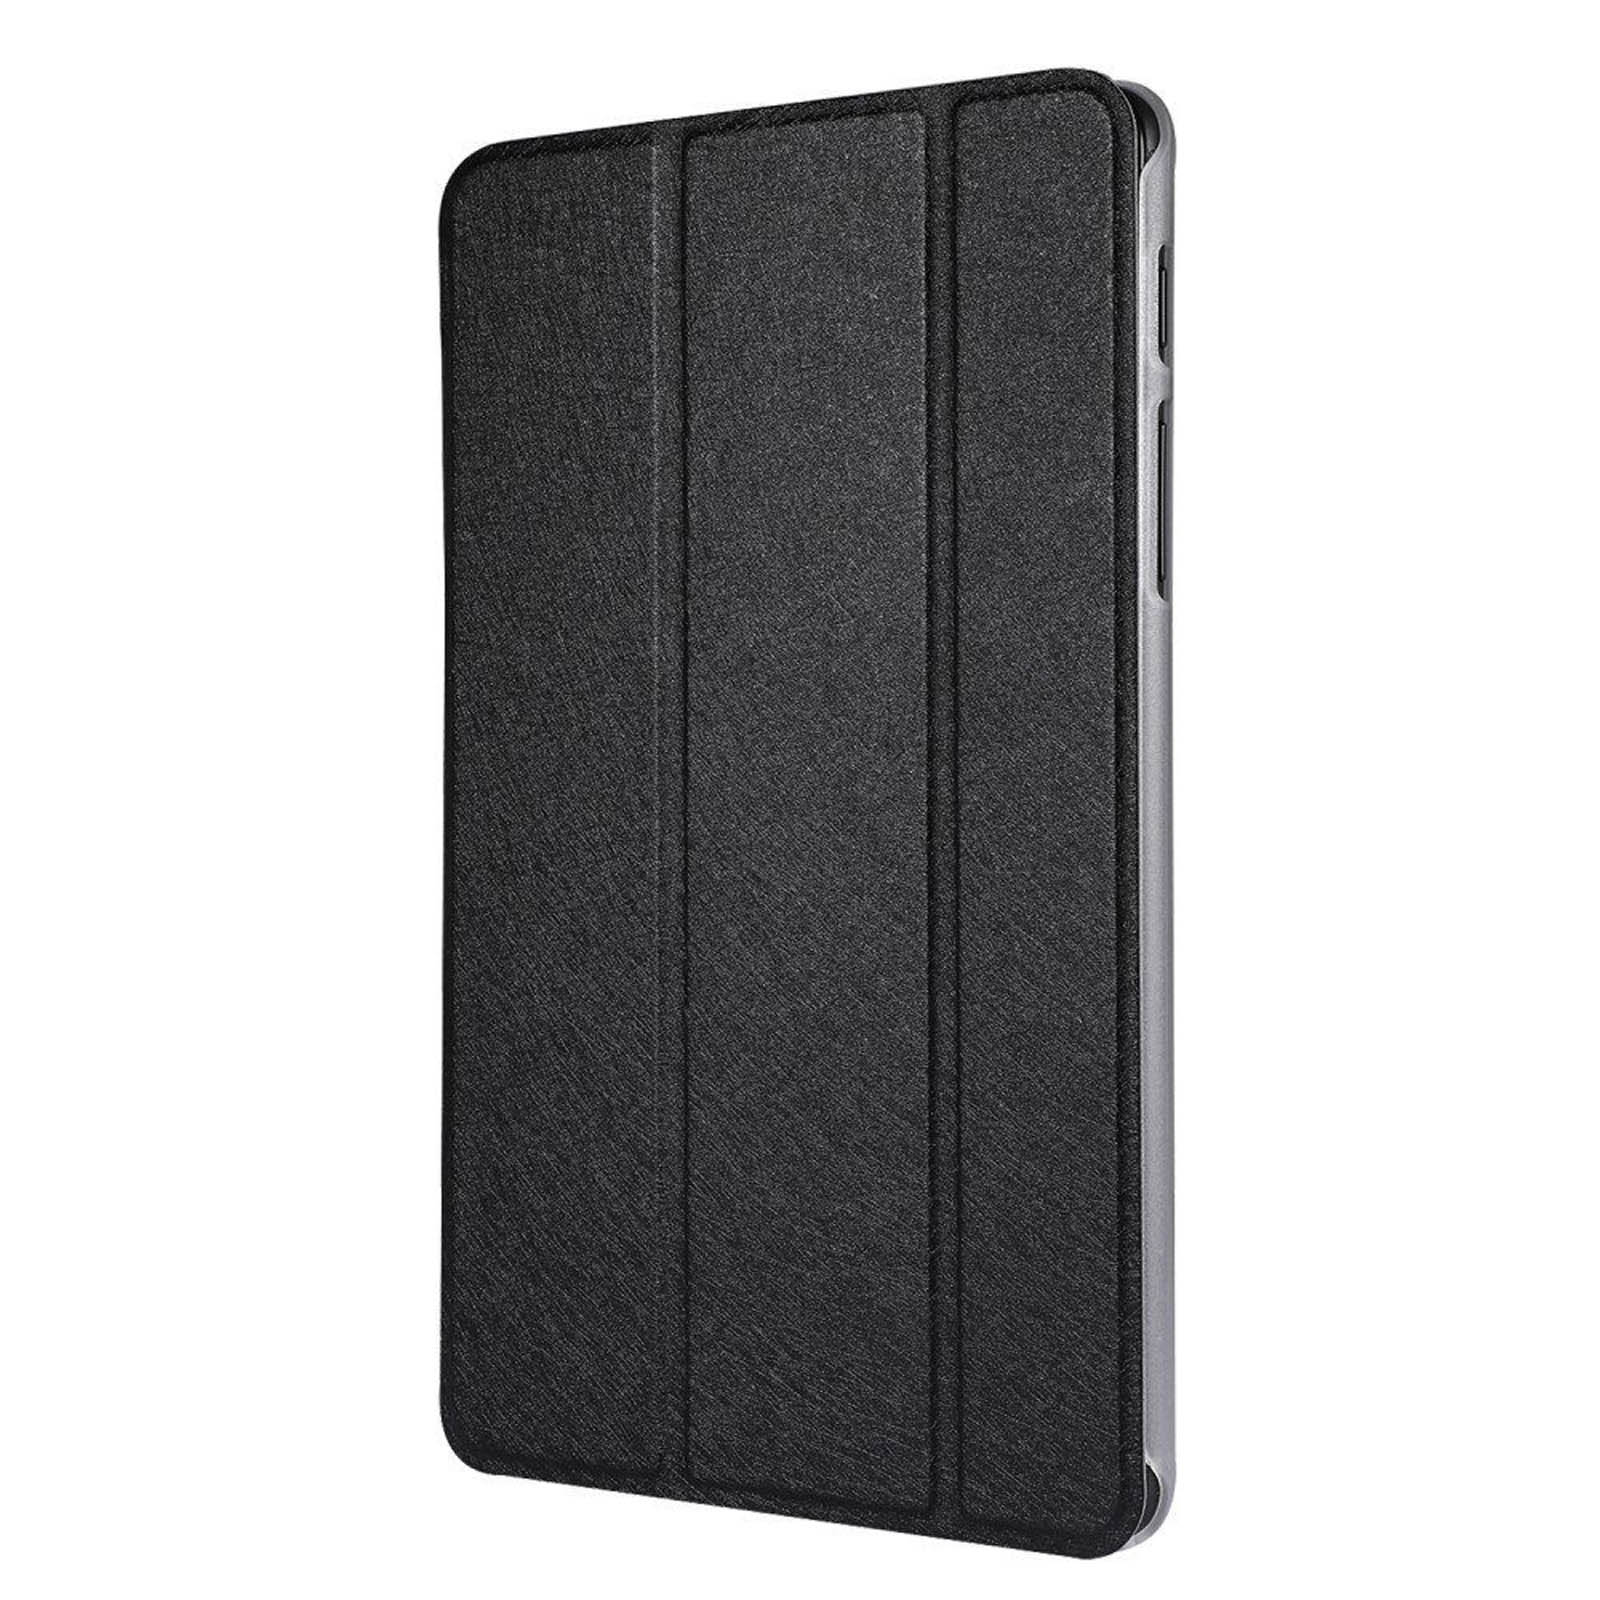 Чехол книжка Smart Case для планшета SAMSUNG Galaxy Tab A 8.0 2019 (SM-T290, SM-T295), цвет черный